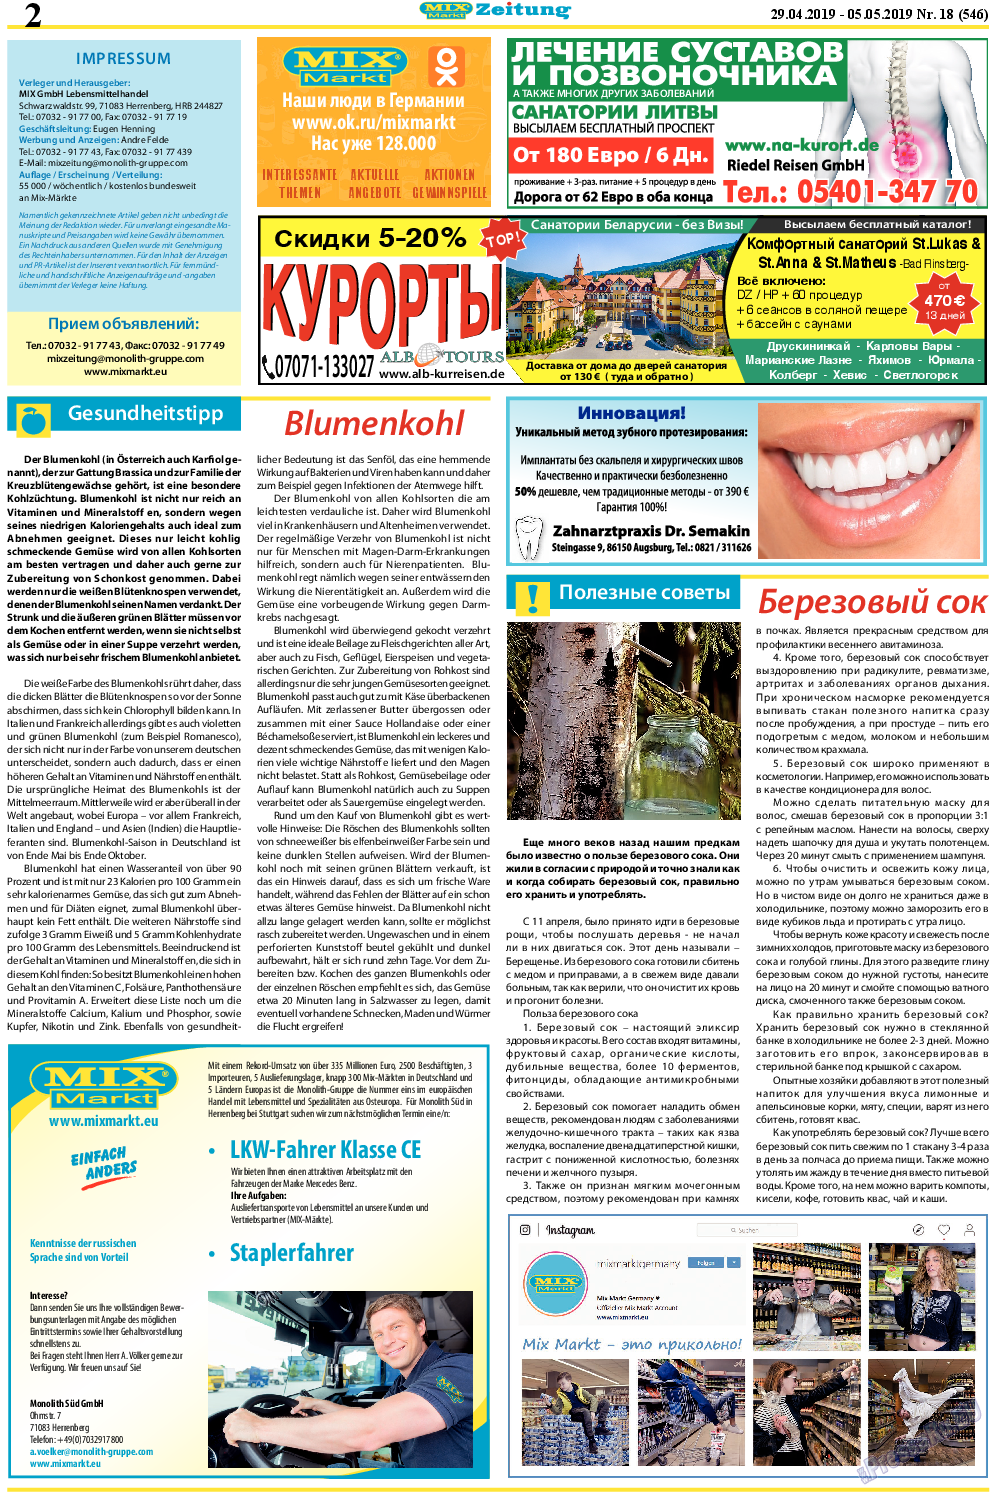 MIX-Markt Zeitung, газета. 2019 №18 стр.2